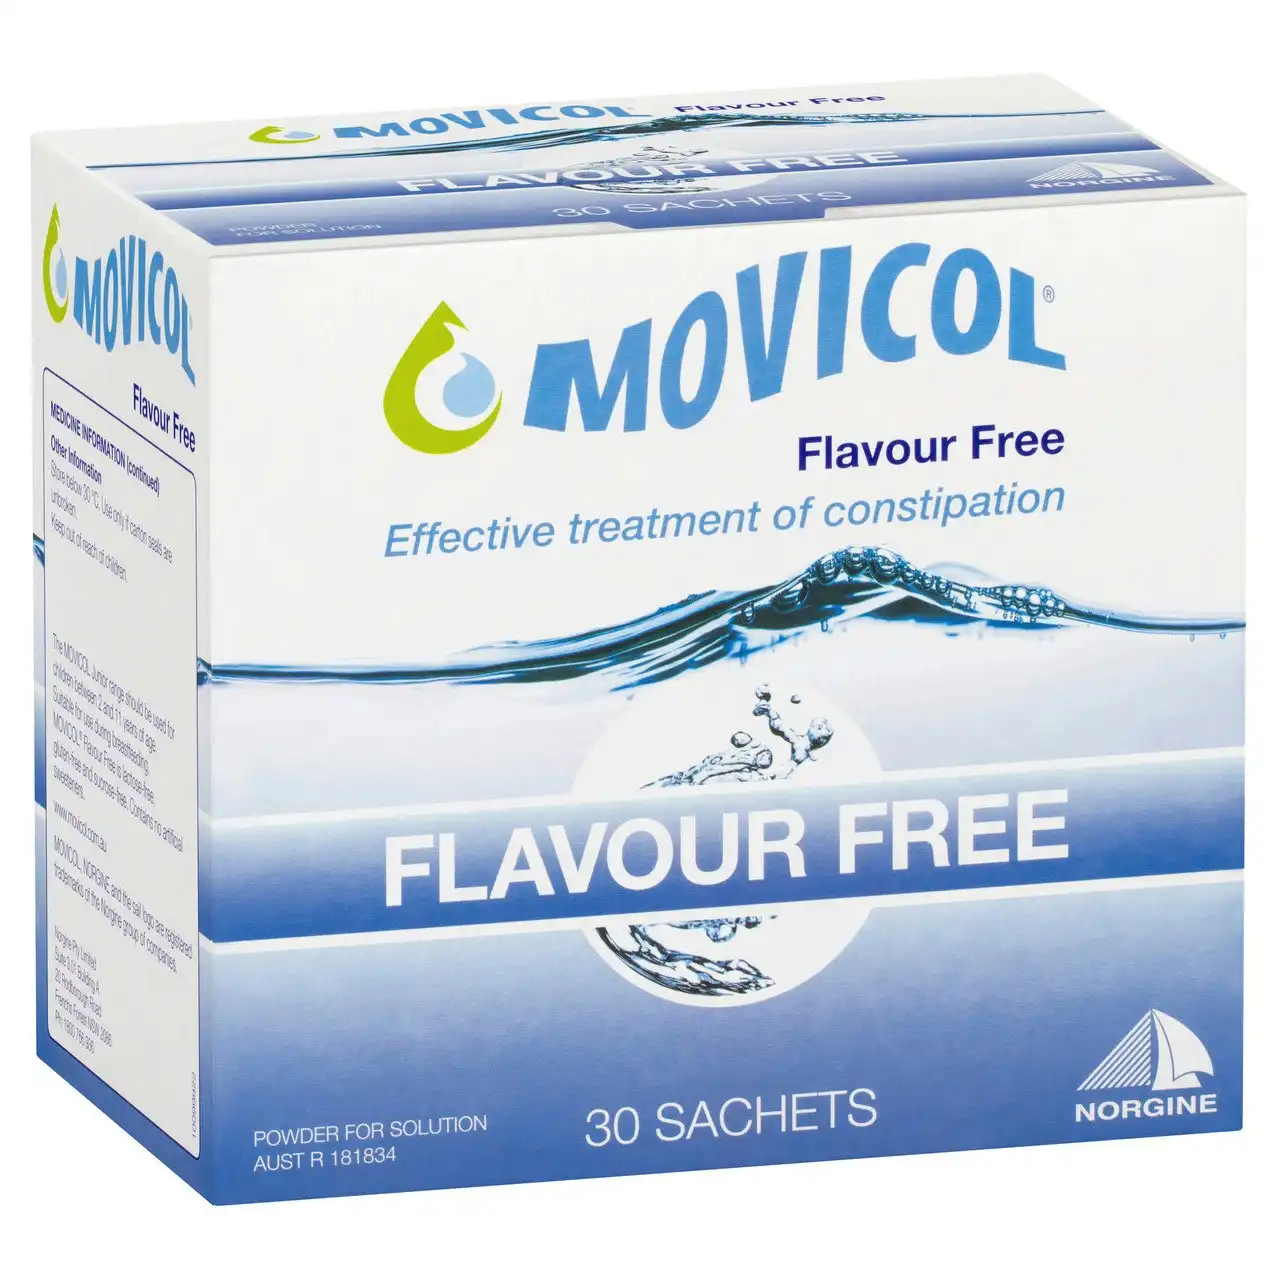 MOVICOL(r) Flavour Free